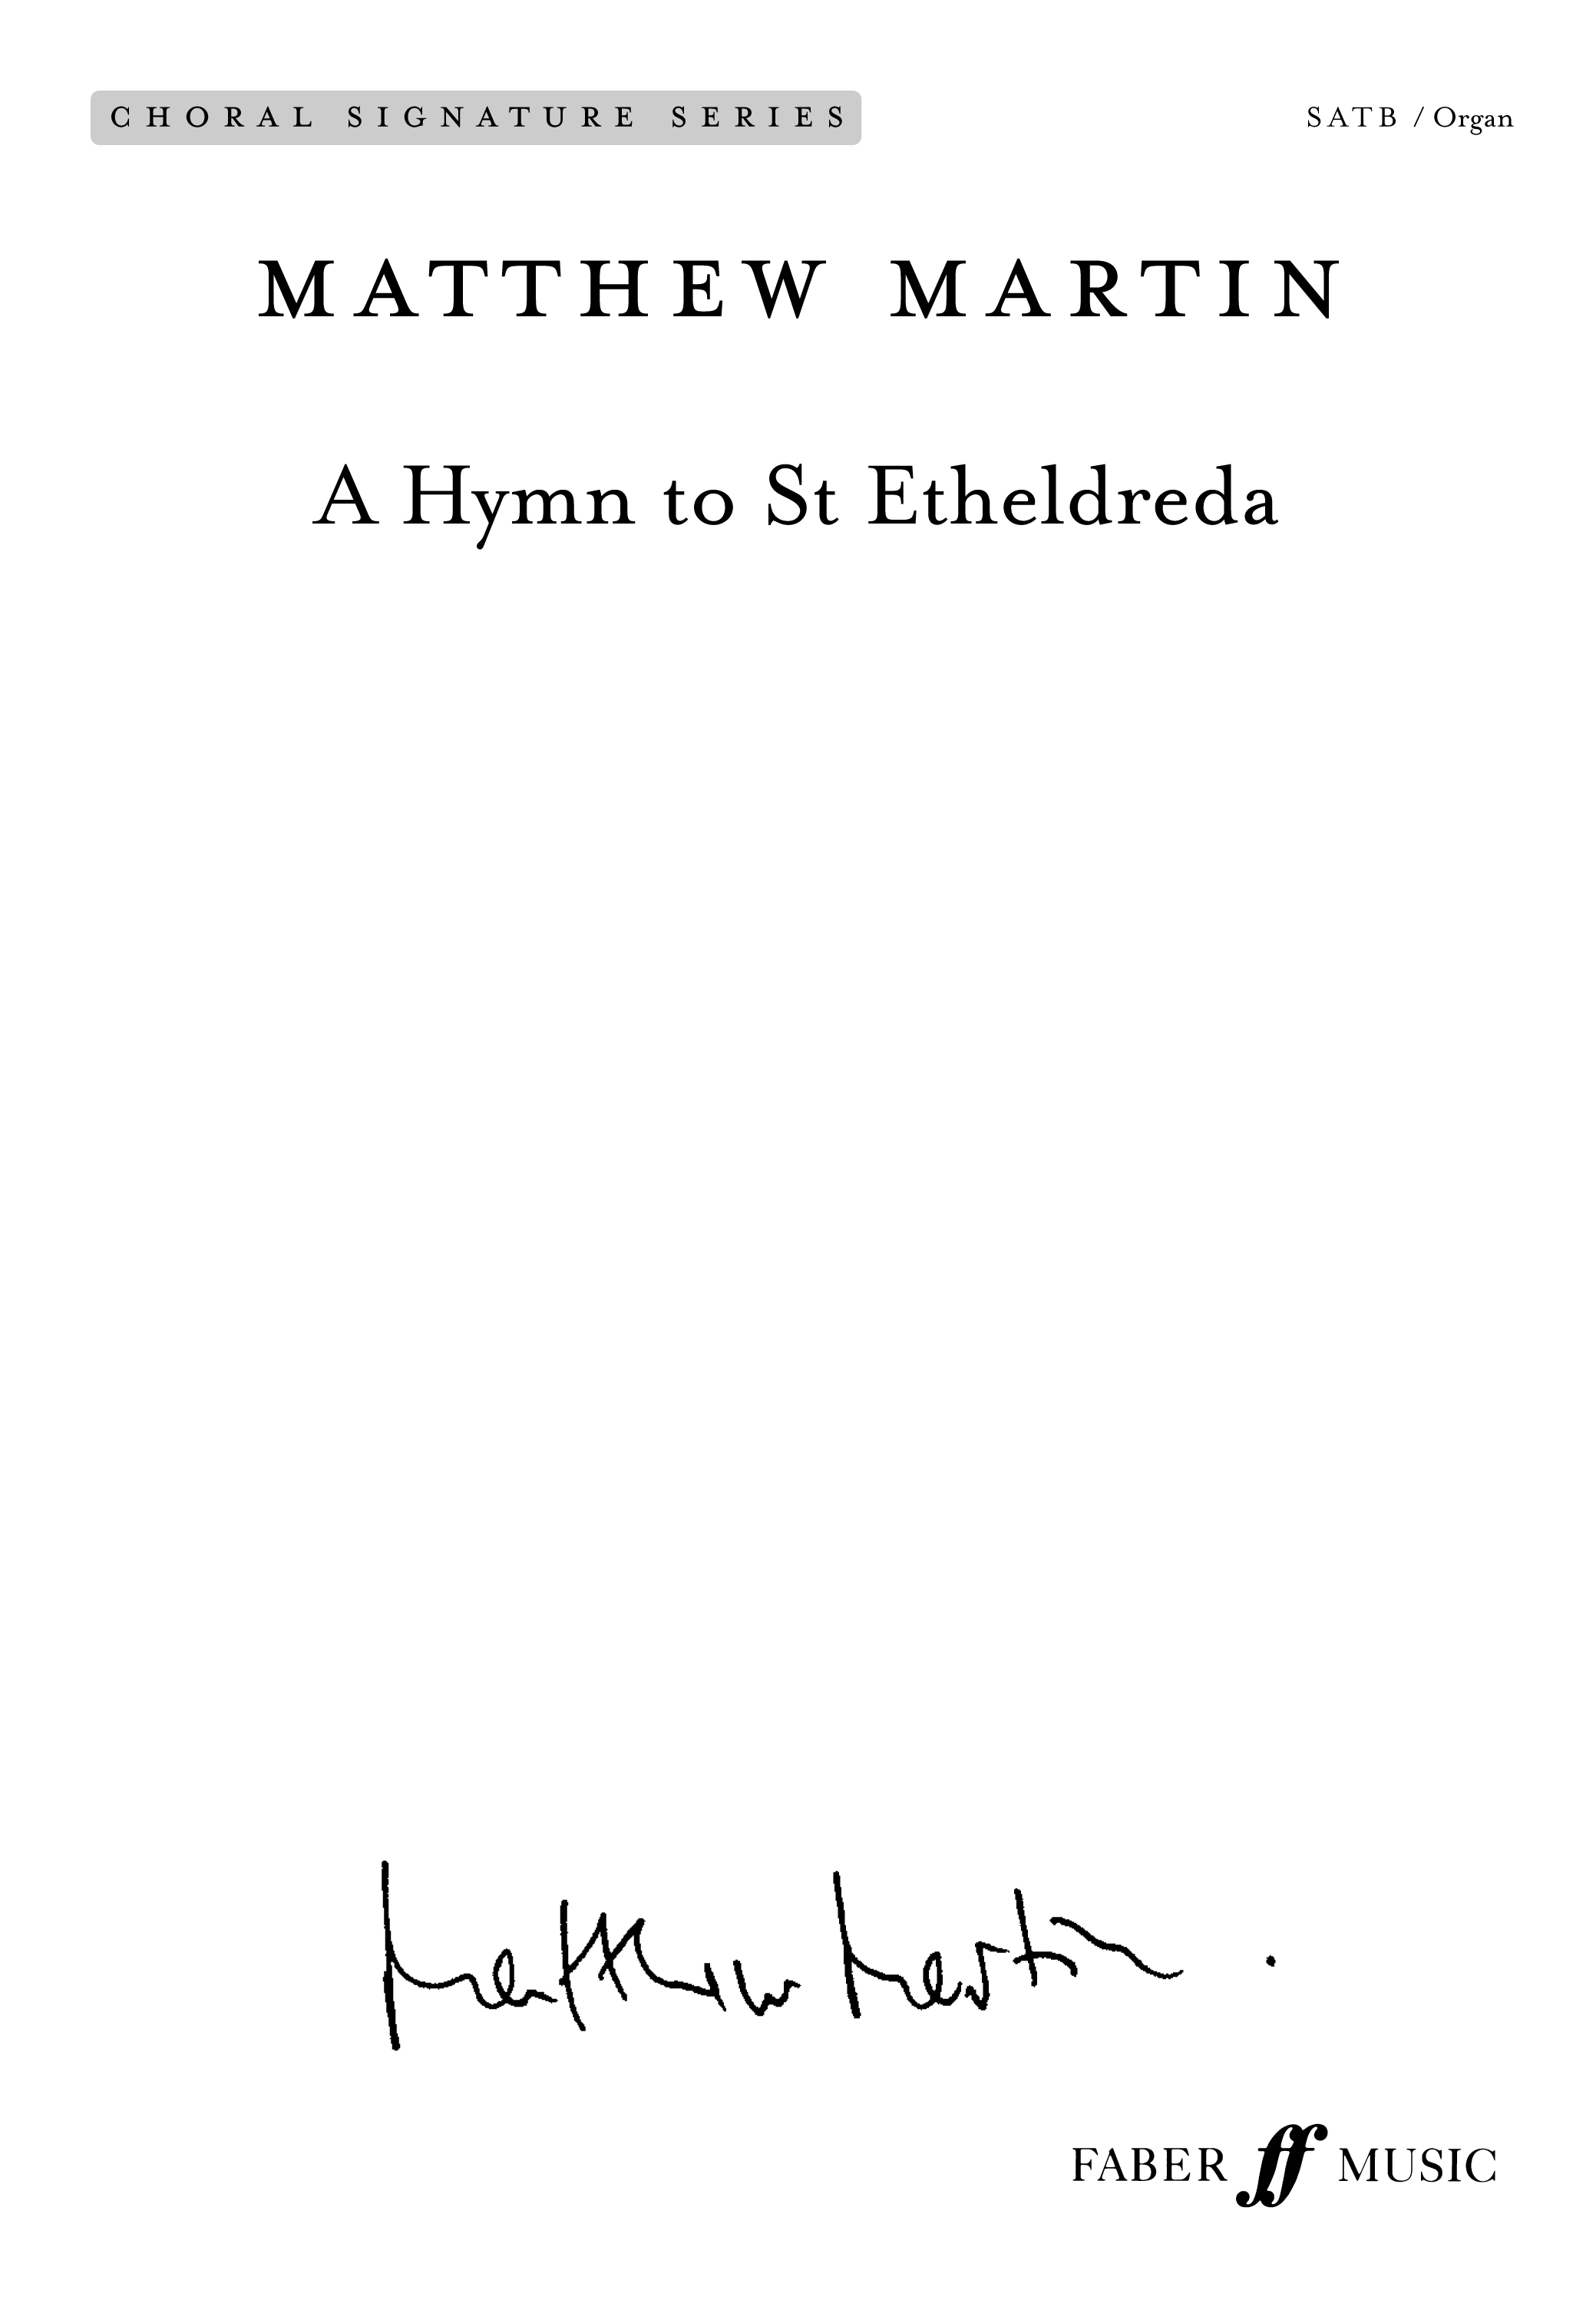 A Hymn to St Etheldreda (MARTIN MATTHEW)